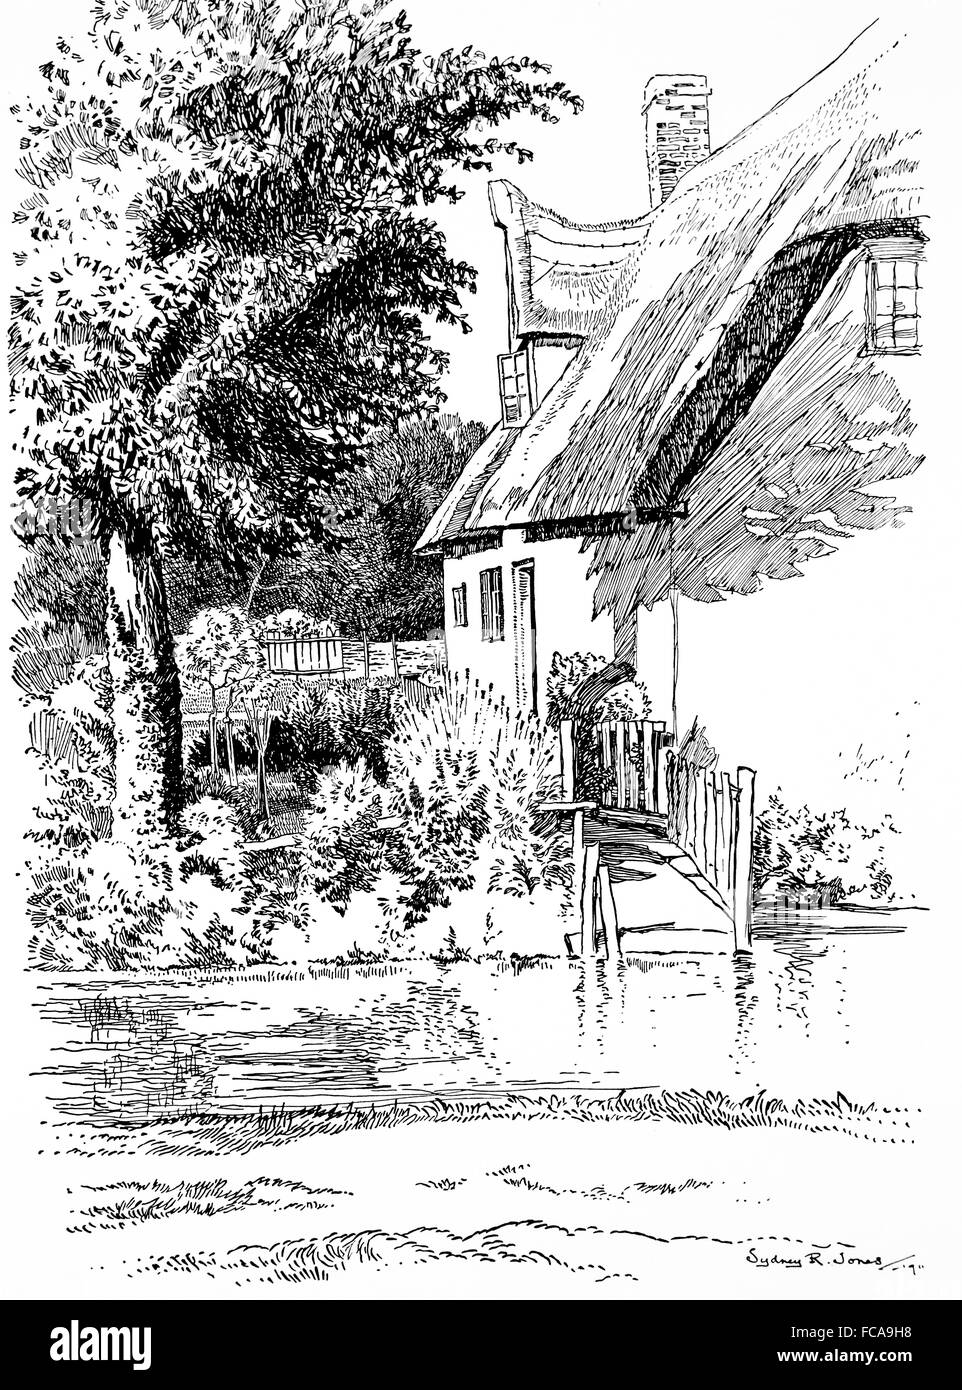 Großbritannien, England, Cambridgeshire, Shepreth, Thatched Cottage, Winkel Lane, Fluss Shep in1911, Linie Illustration von Sydney R Jones Stockfoto